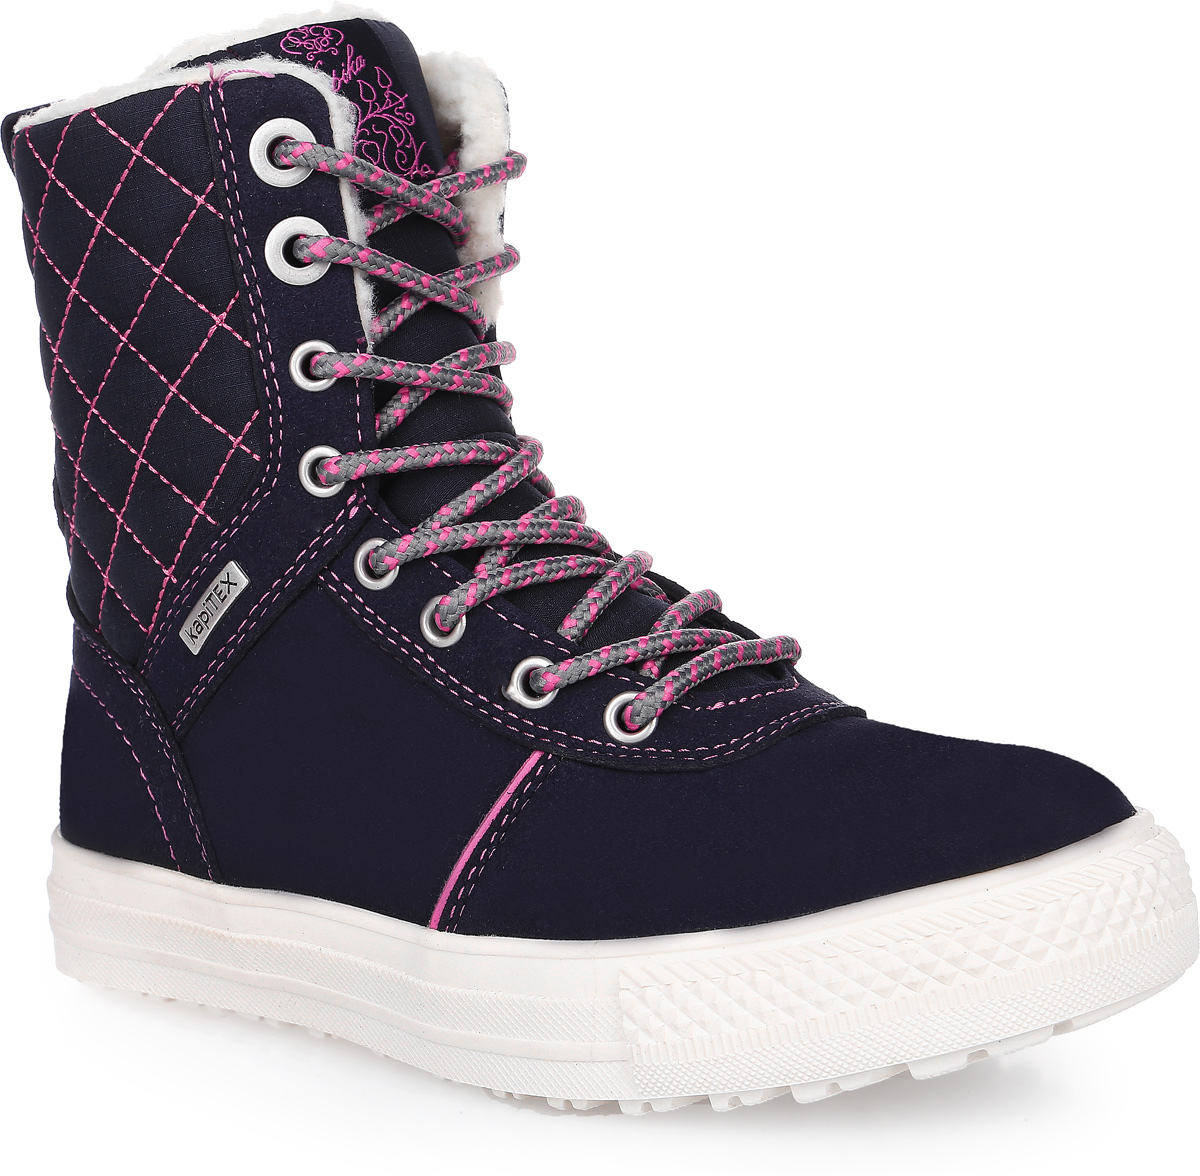 Ботинки для девочки Kapika, цвет: темно-синий, розовый. 43190-2. Размер 31